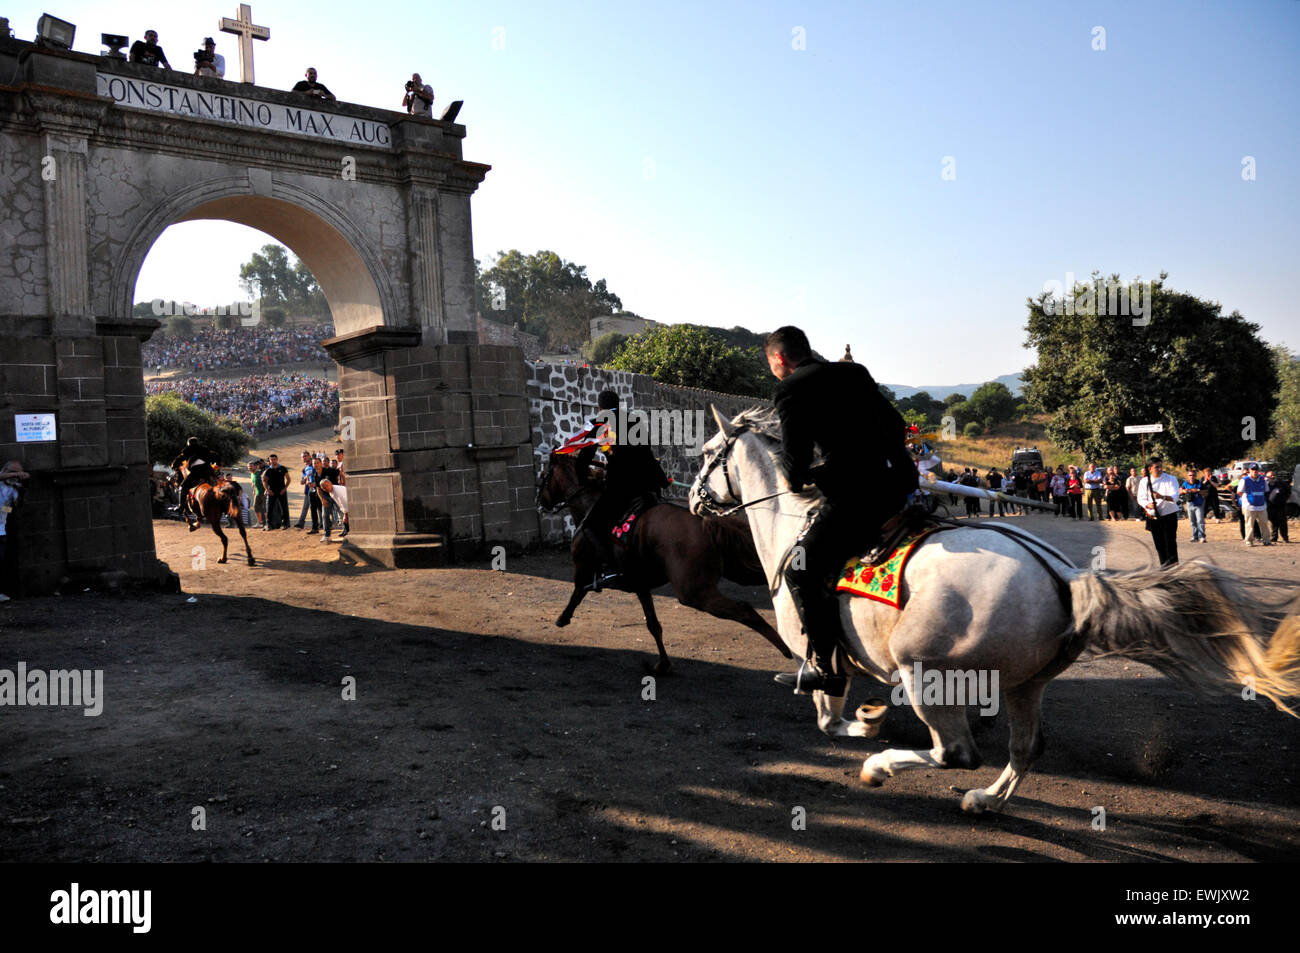 Sedilo,Sardegna,l'Italia, 6/7/2013.Famosa Ardia tradizionale corsa di cavalli hanno luogo ogni anno in luglio intorno a San Costantino chiesa Foto Stock